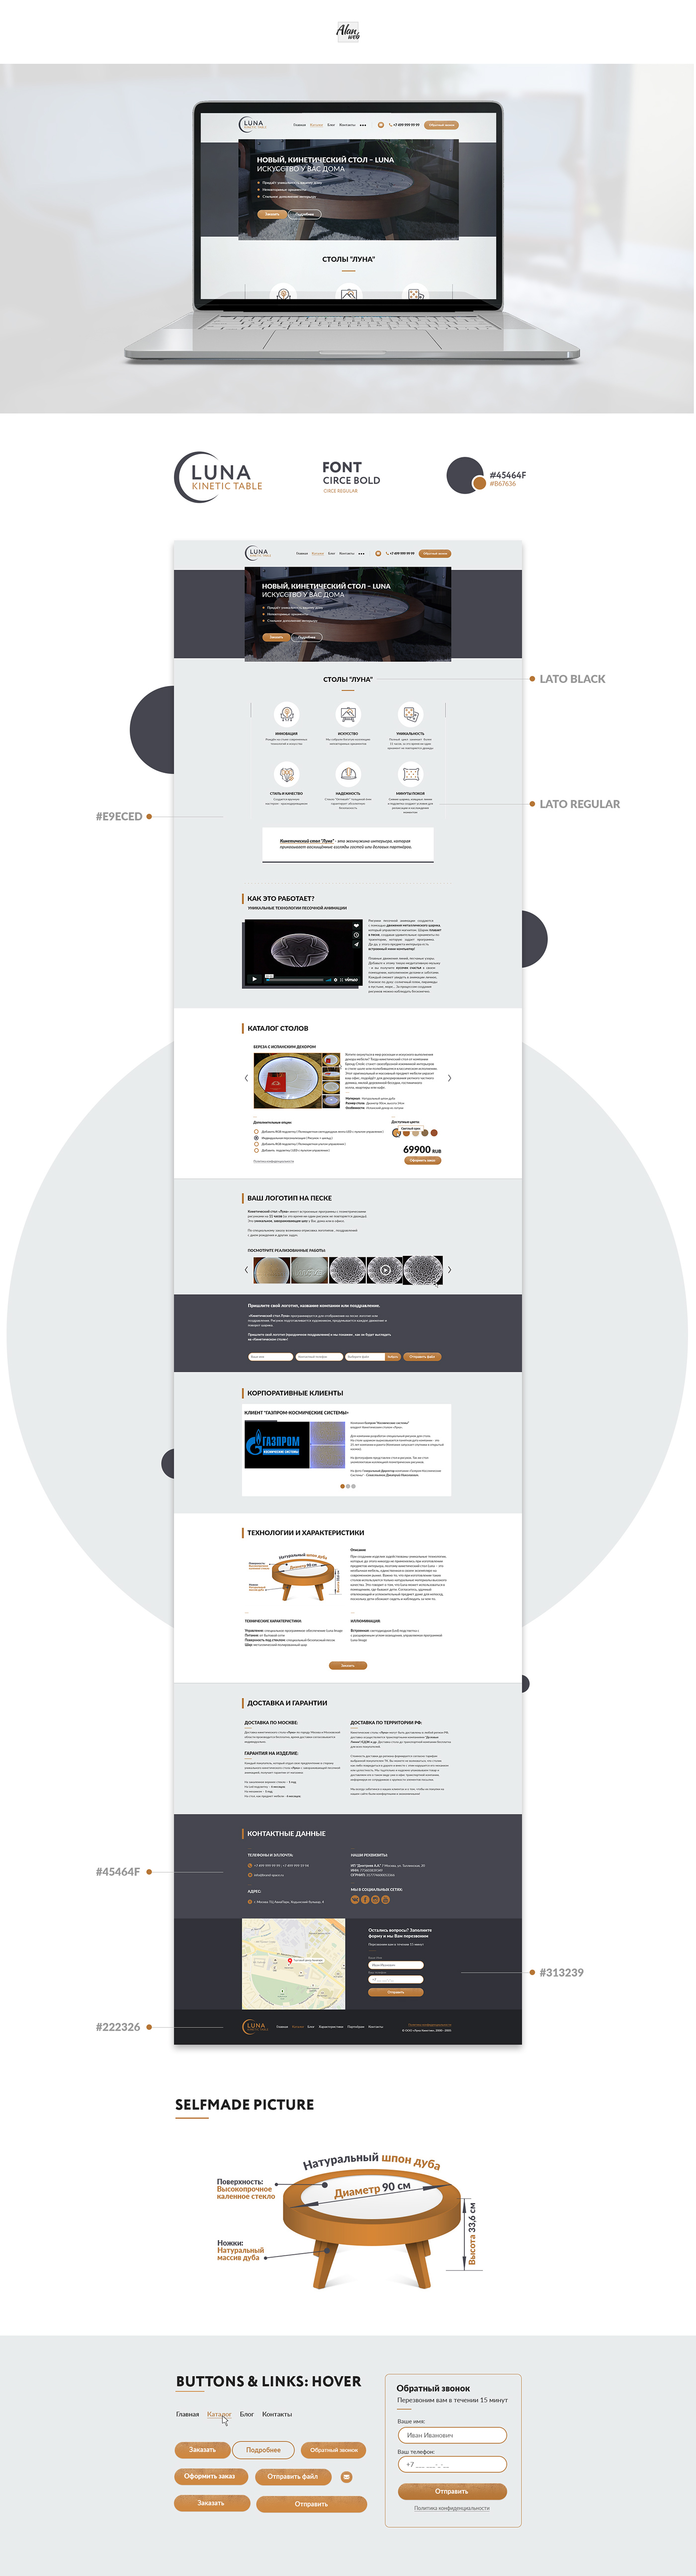 landing page ui kit Mockup circle web-design furniture round button